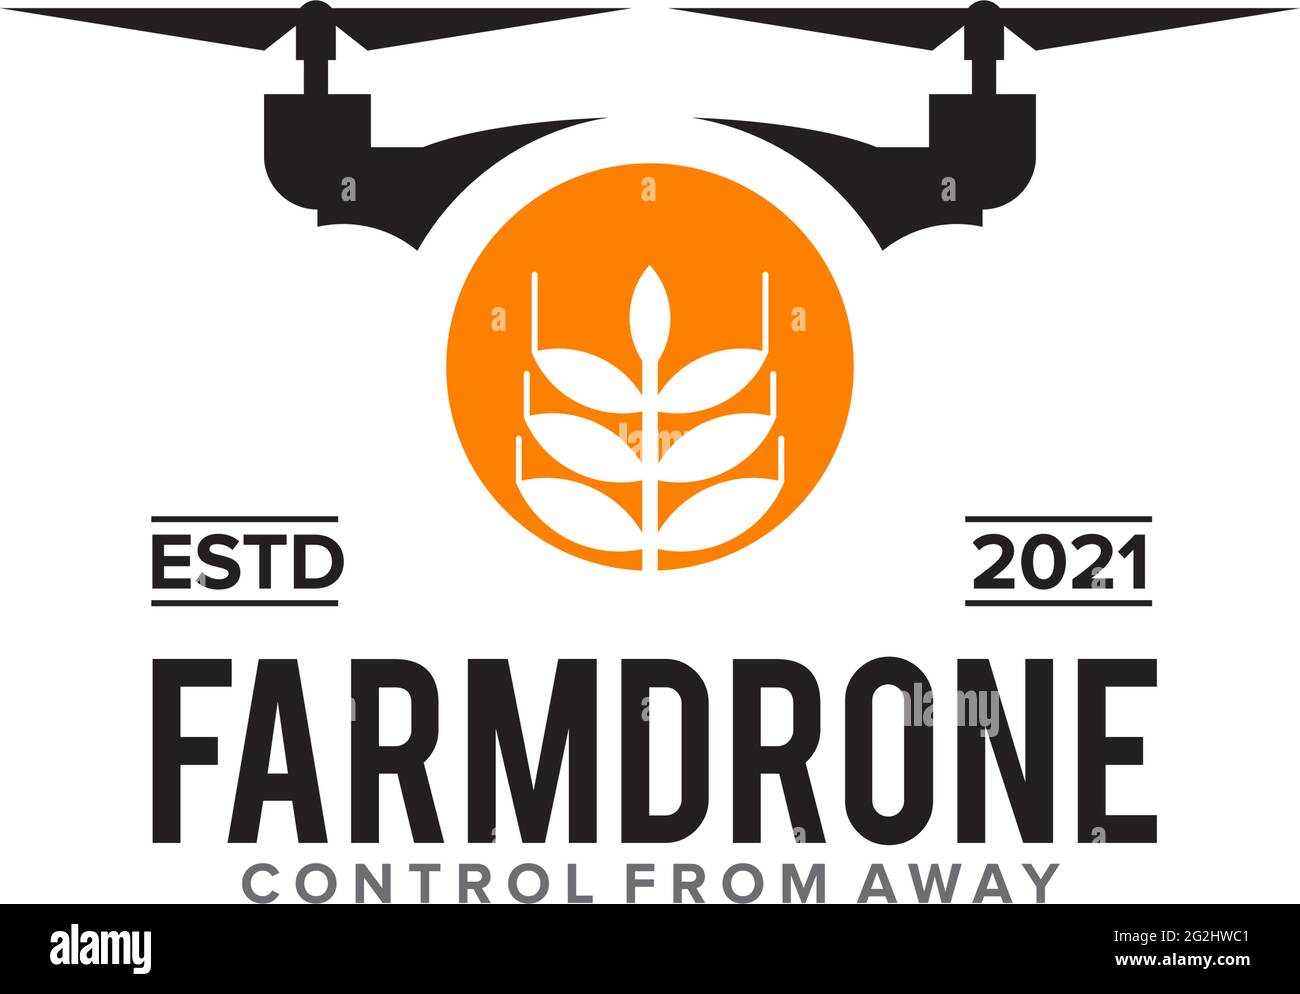 Farm drone logo design vector template Stock Vector